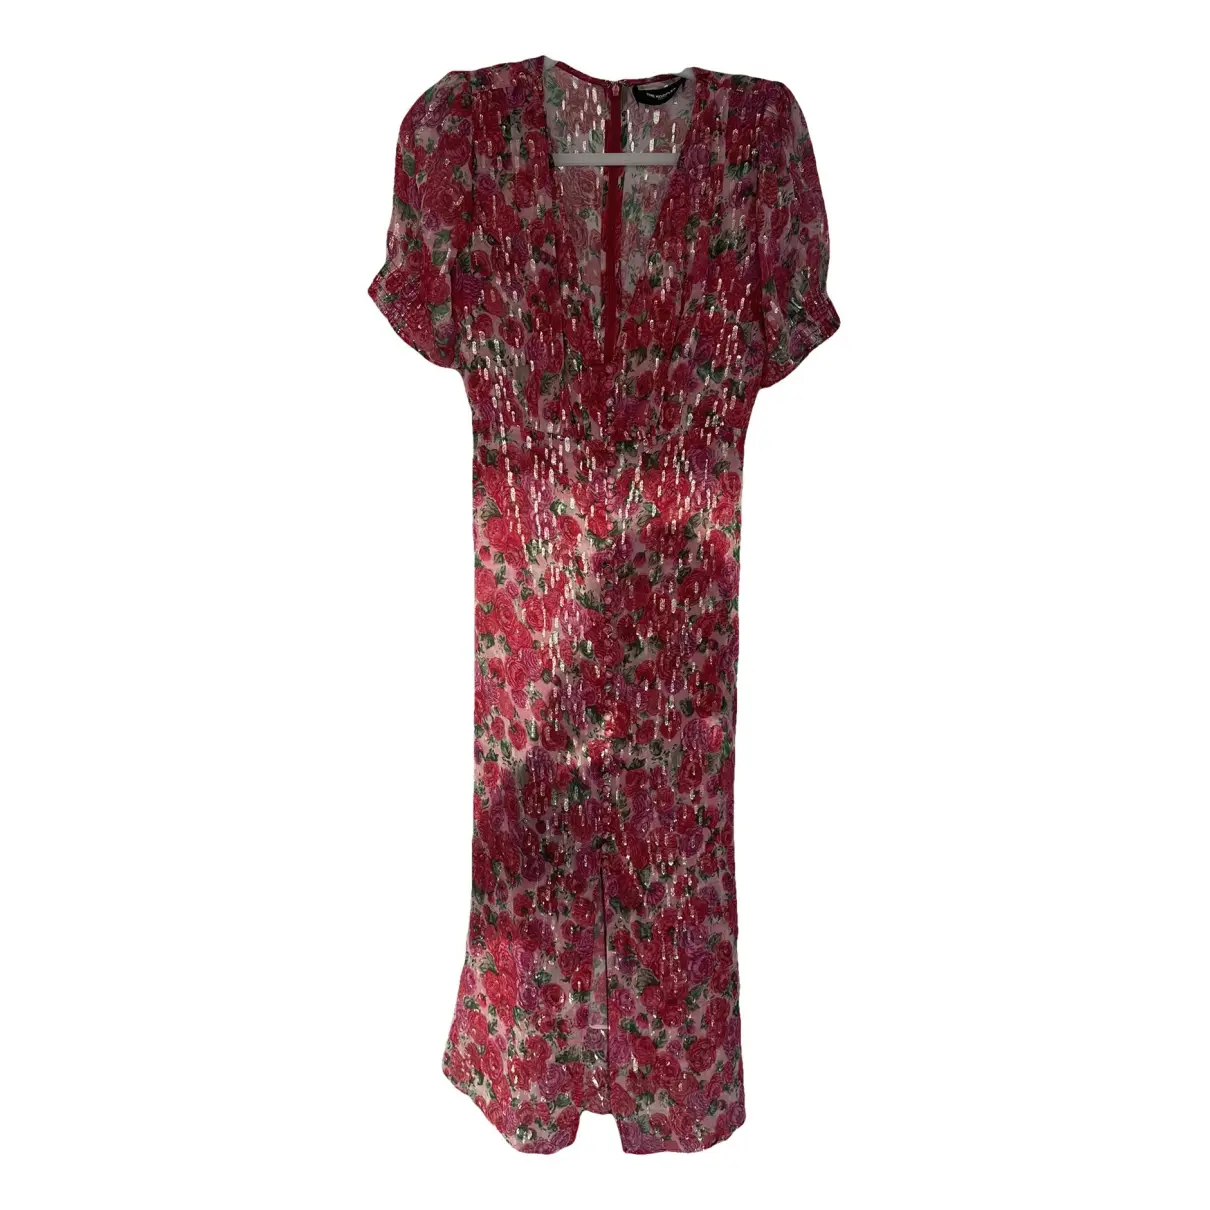 Spring Summer 2019 silk mid-length dress